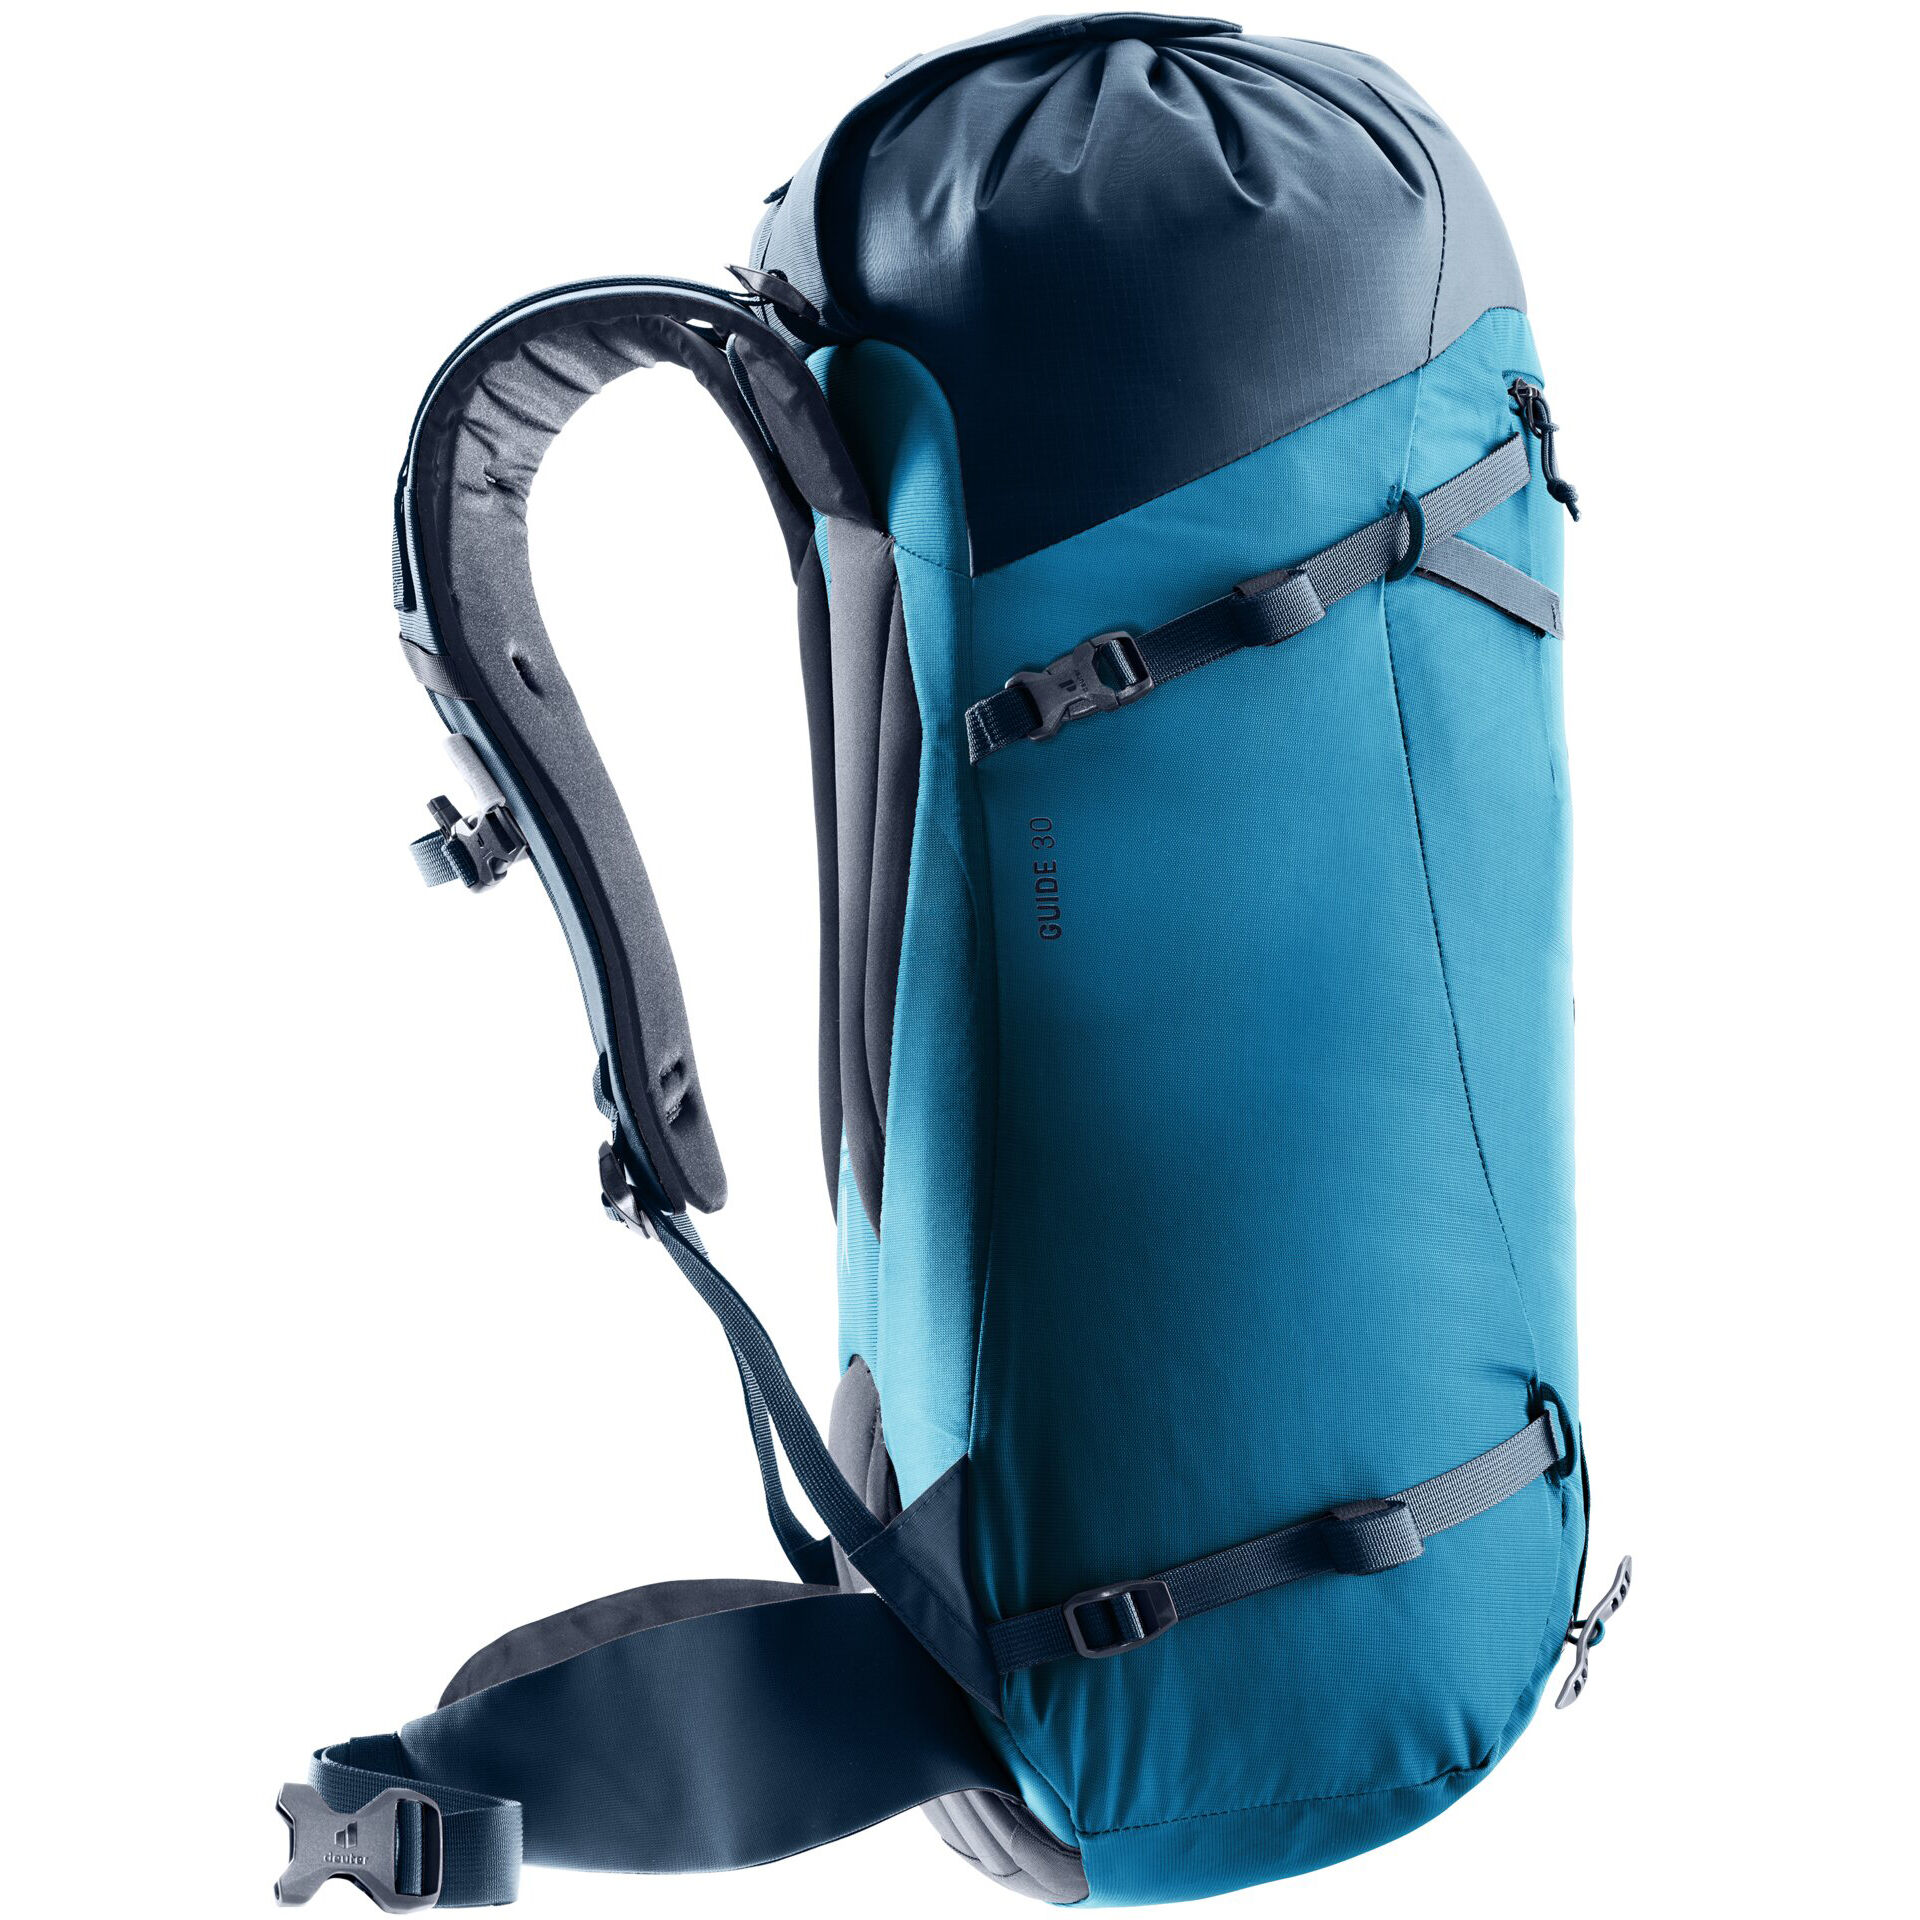 Deuter Guide 30 Alpine Climbing Backpack